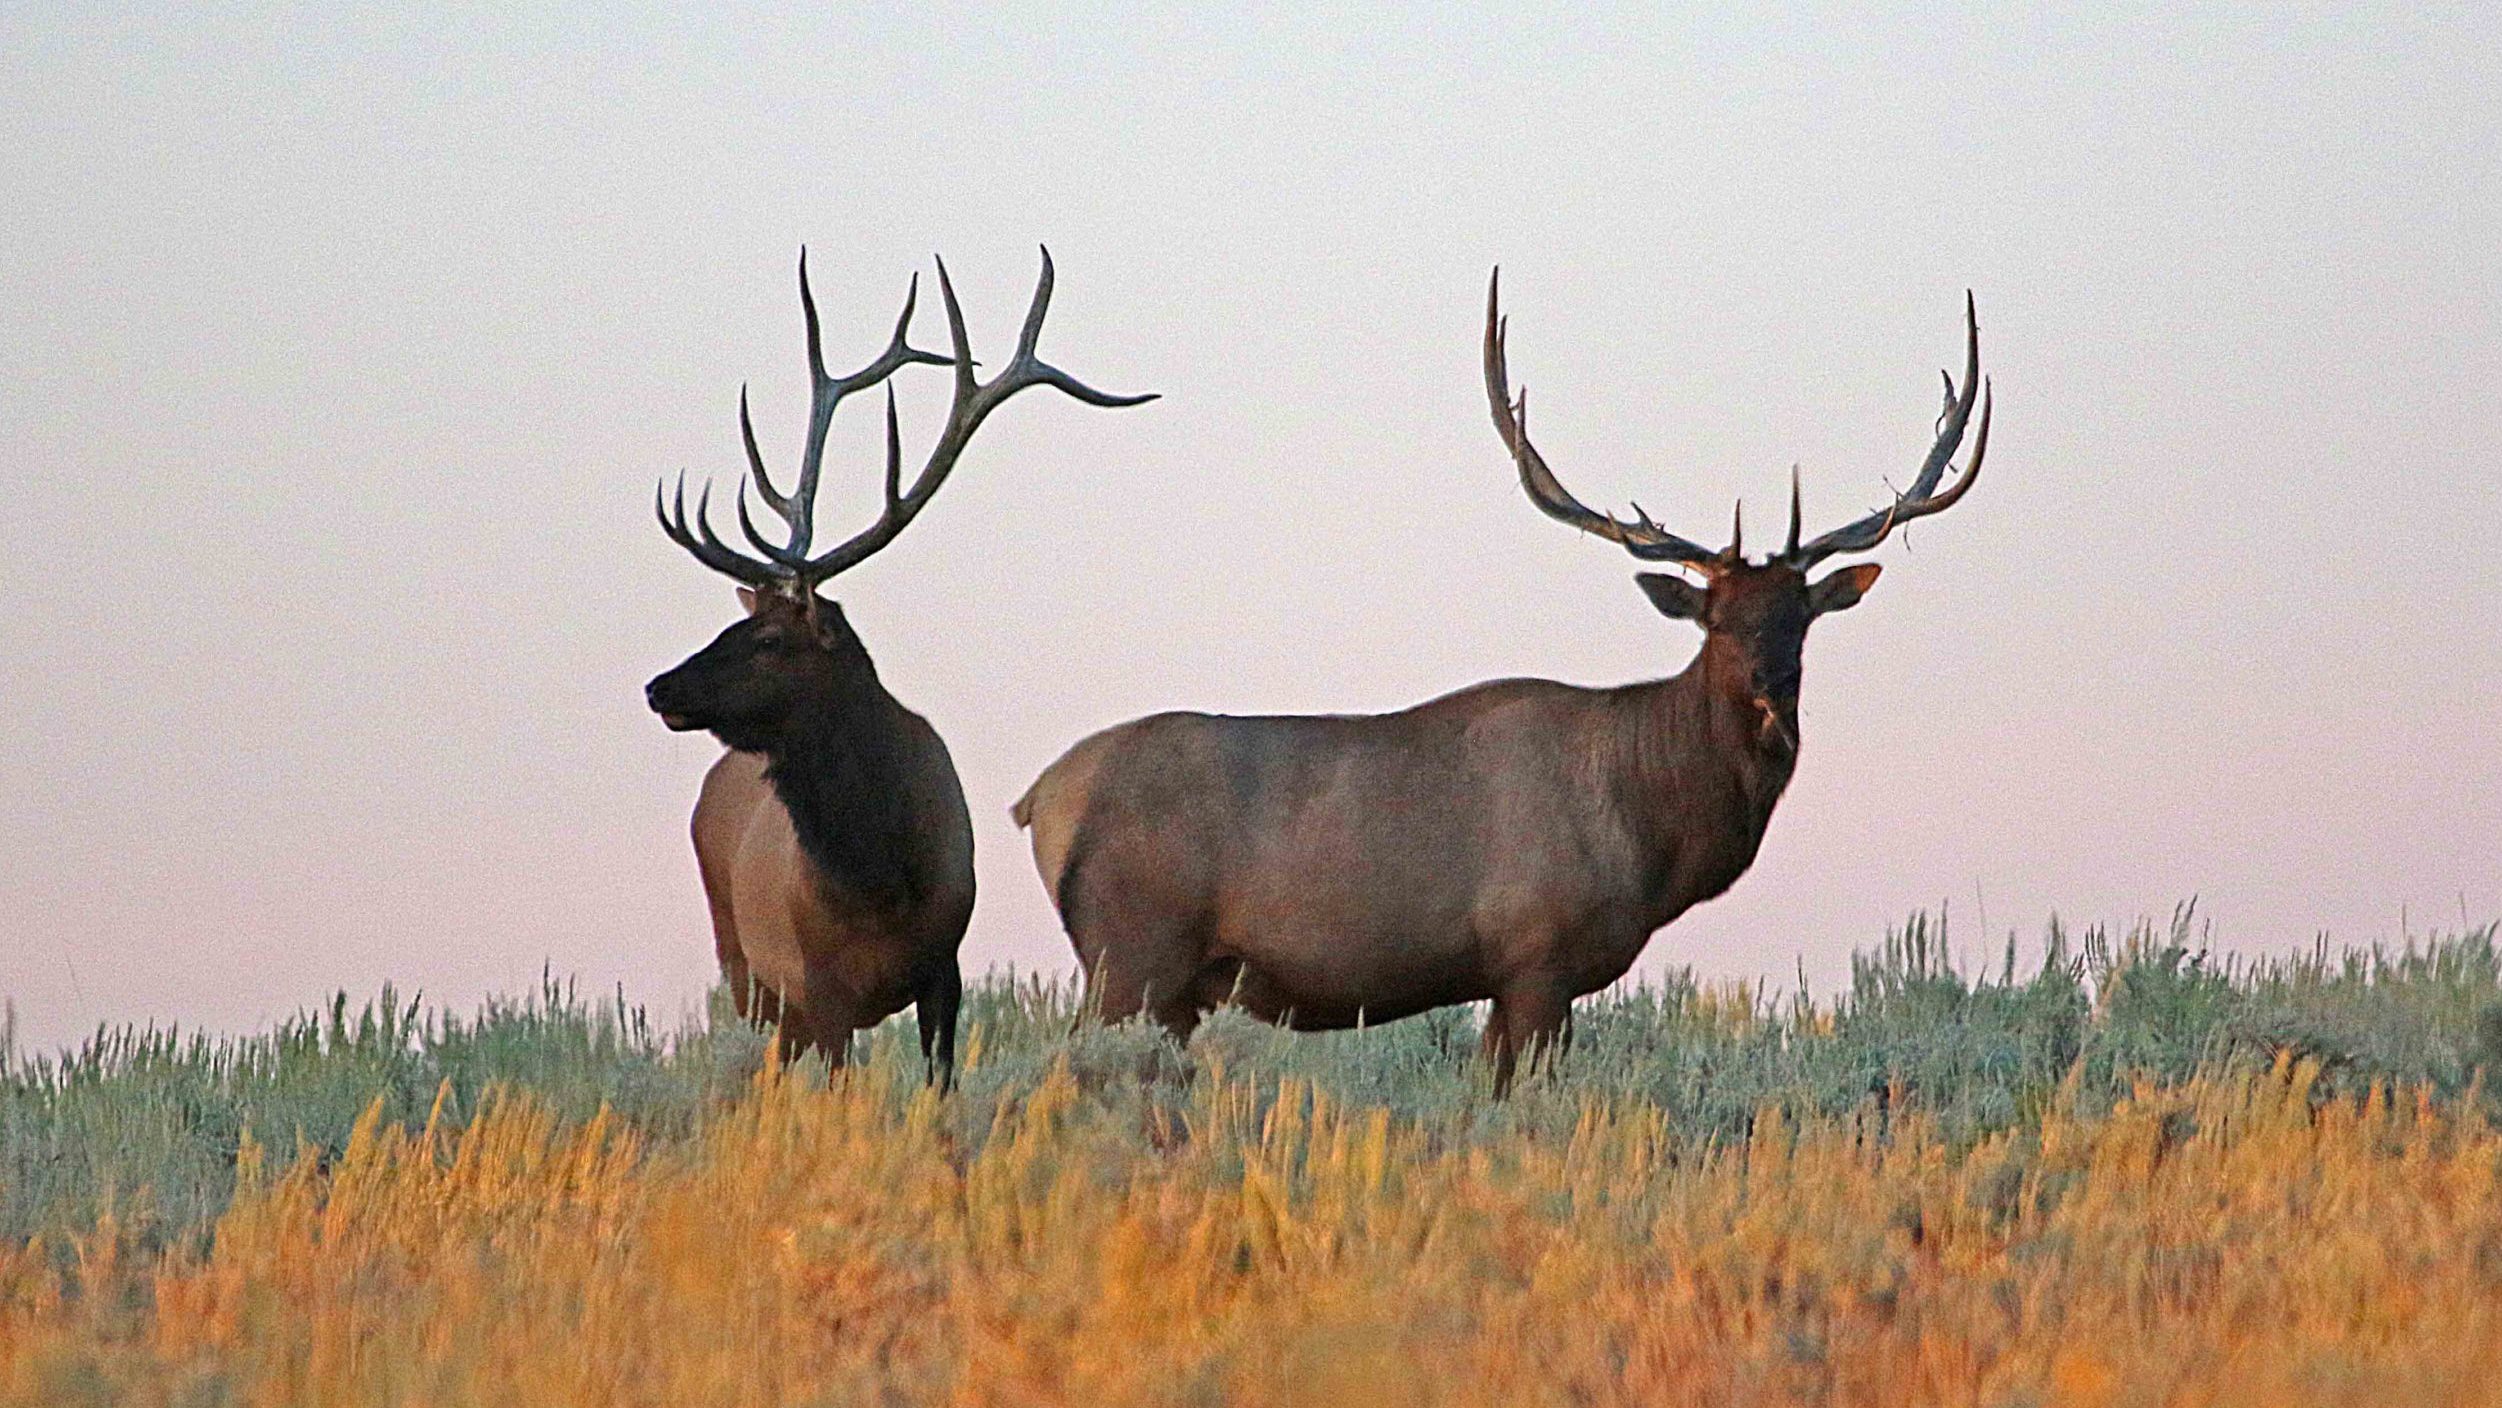 Bull Elk...